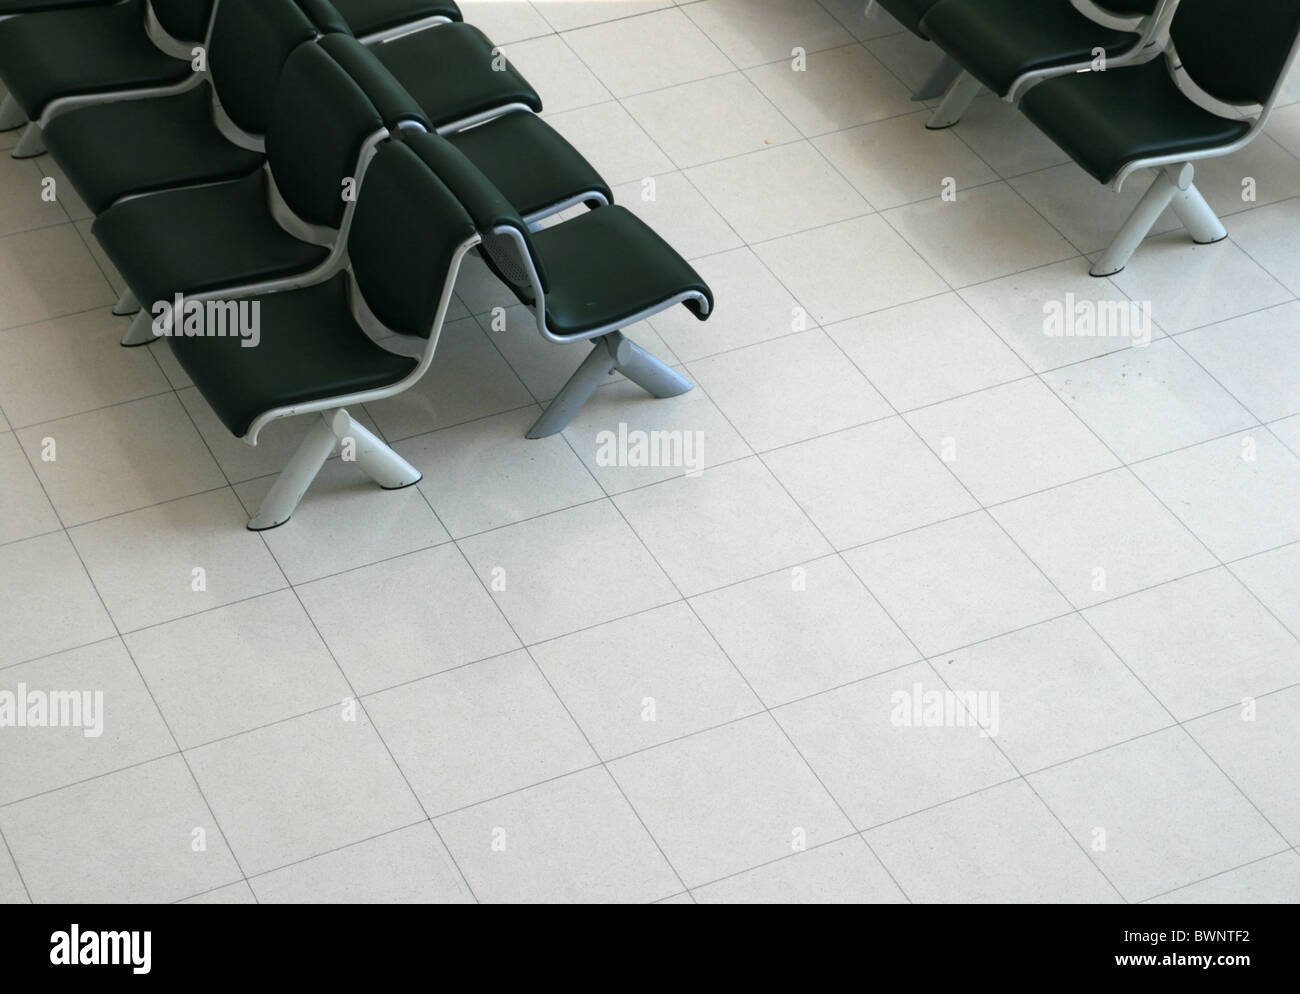 Zona de espera con asientos acolchados negro luz y suelo de azulejos desde arriba Foto de stock